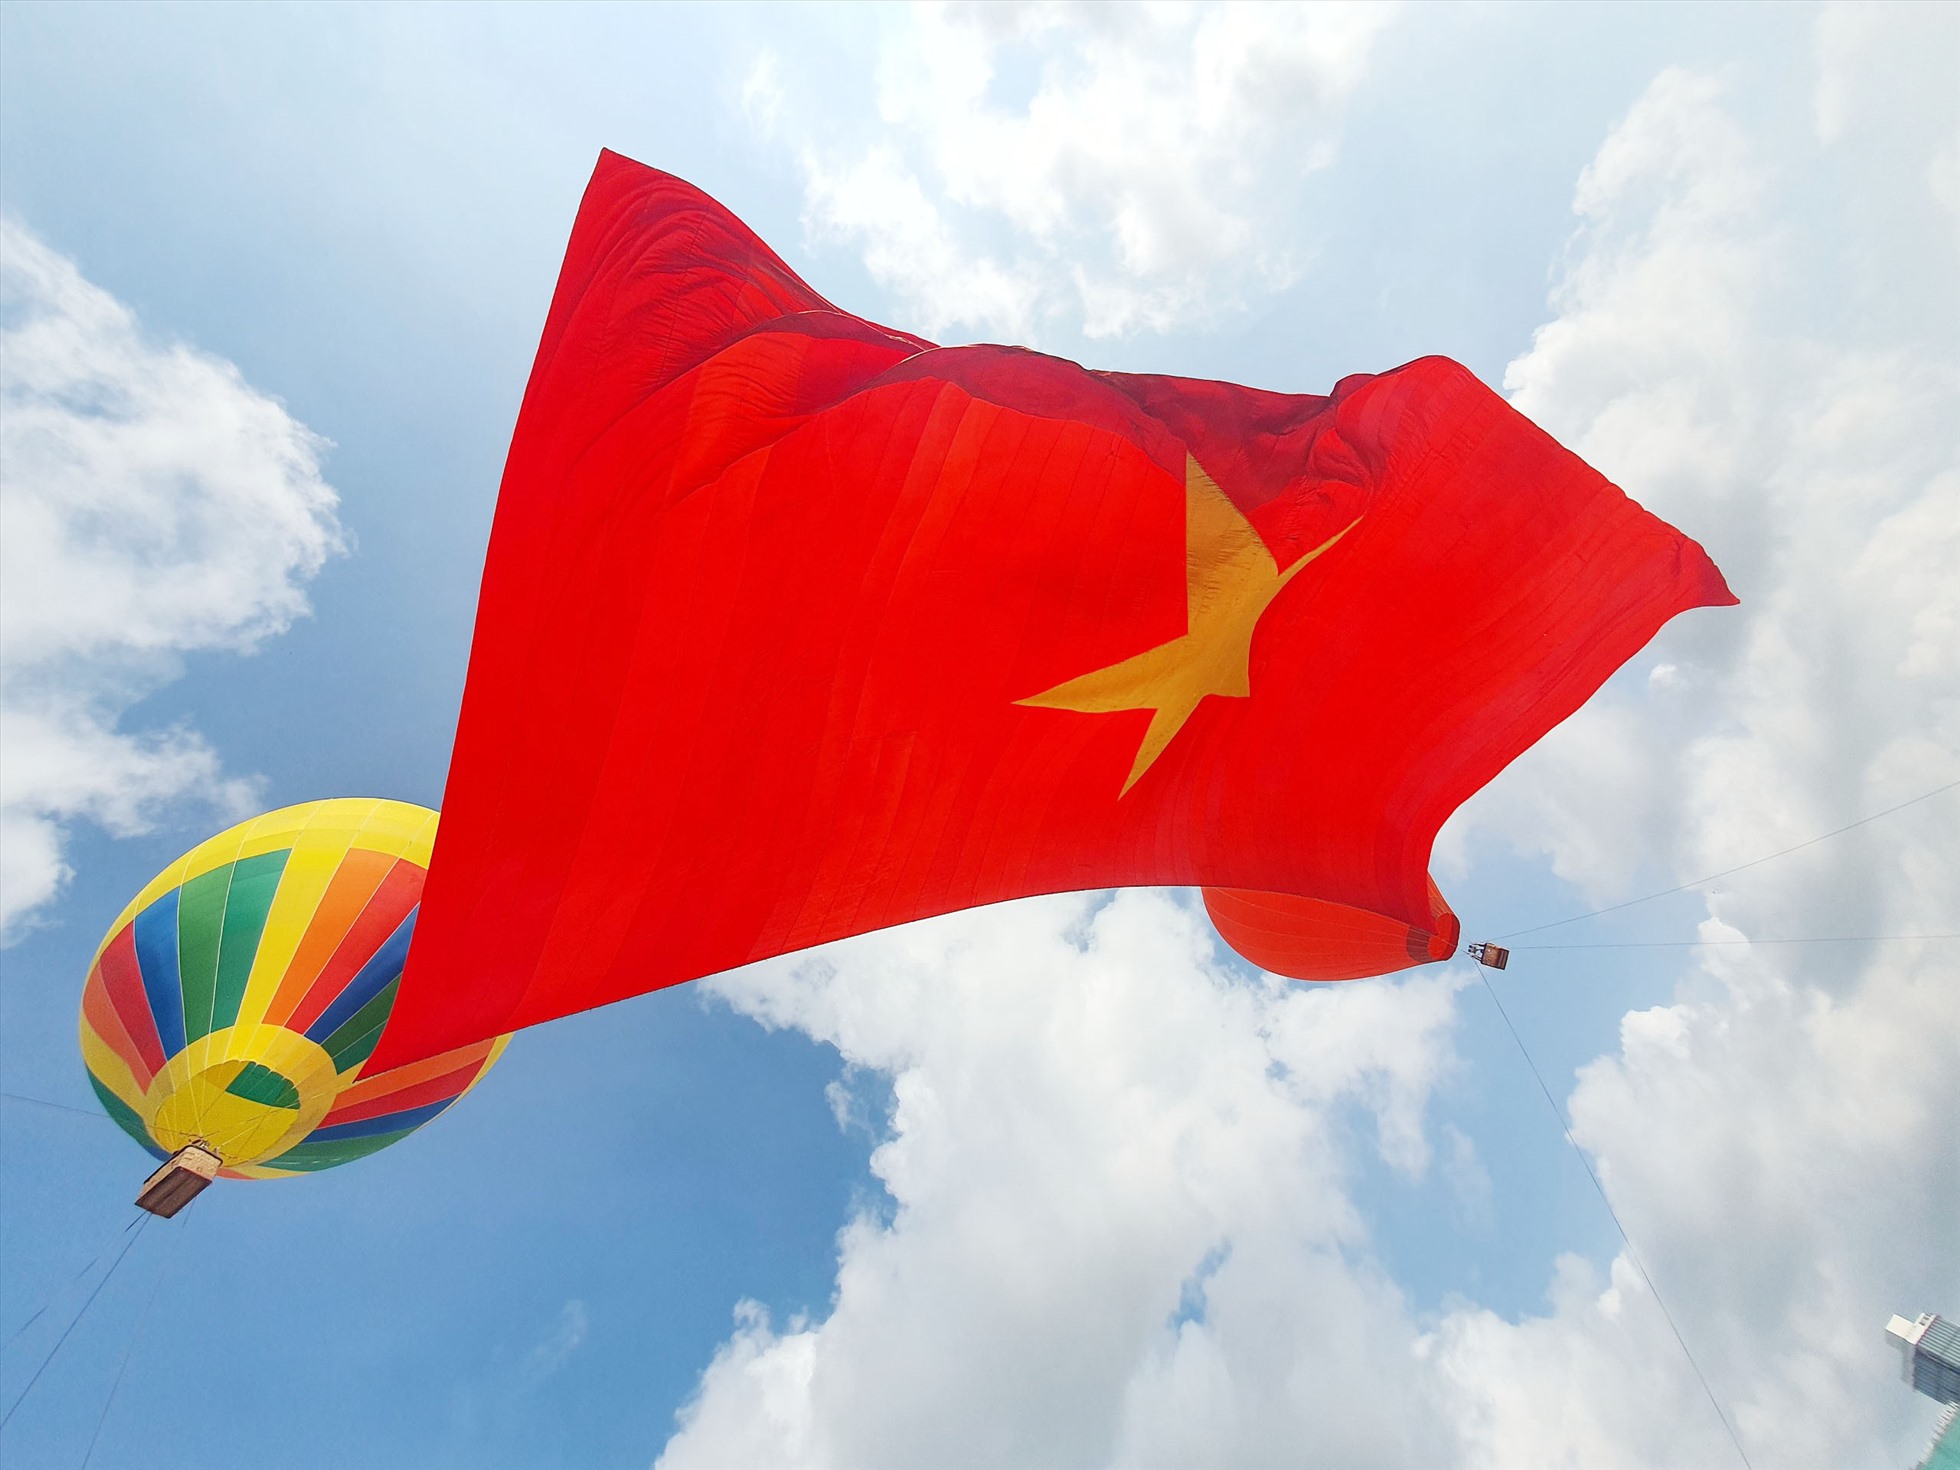 Khinh khí cầu: Khinh khí cầu là một trong những trò chơi giải trí được ưa chuộng ở Việt Nam. Năm 2024, du lịch khinh khí cầu đã trở thành một lựa chọn thú vị cho gia đình, đặc biệt trong các dịp lễ tết. Hãy cùng chiêm ngưỡng những hình ảnh về khinh khí cầu, đắm chìm trong không gian yên bình và ngắm nhìn phong cảnh đẹp.